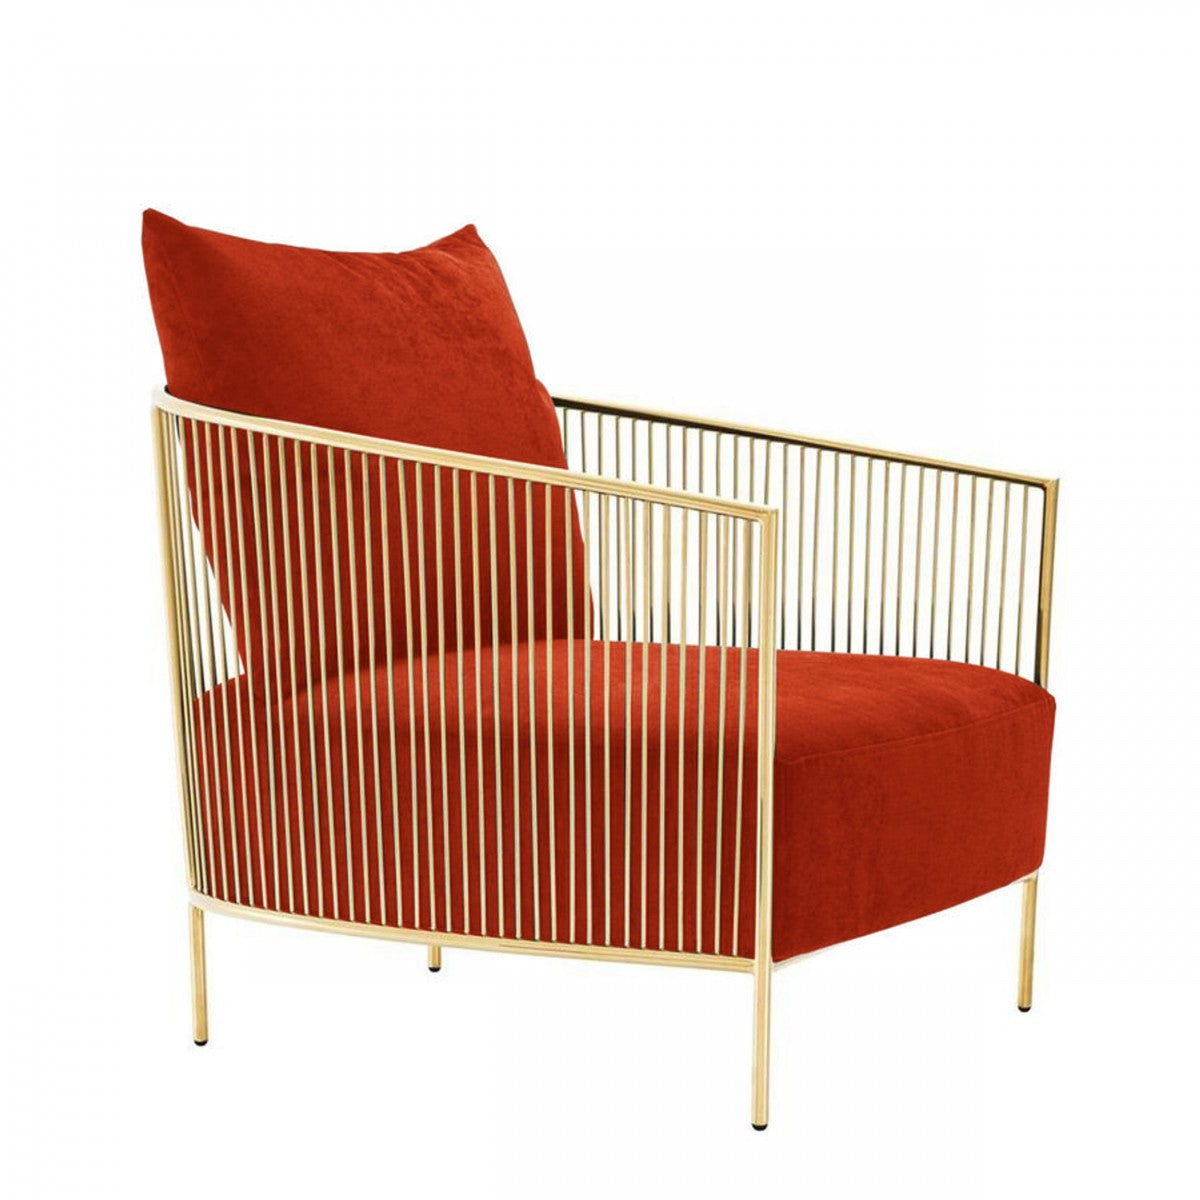 Modrest Loveland - Glam Orange Velvet Accent Chair